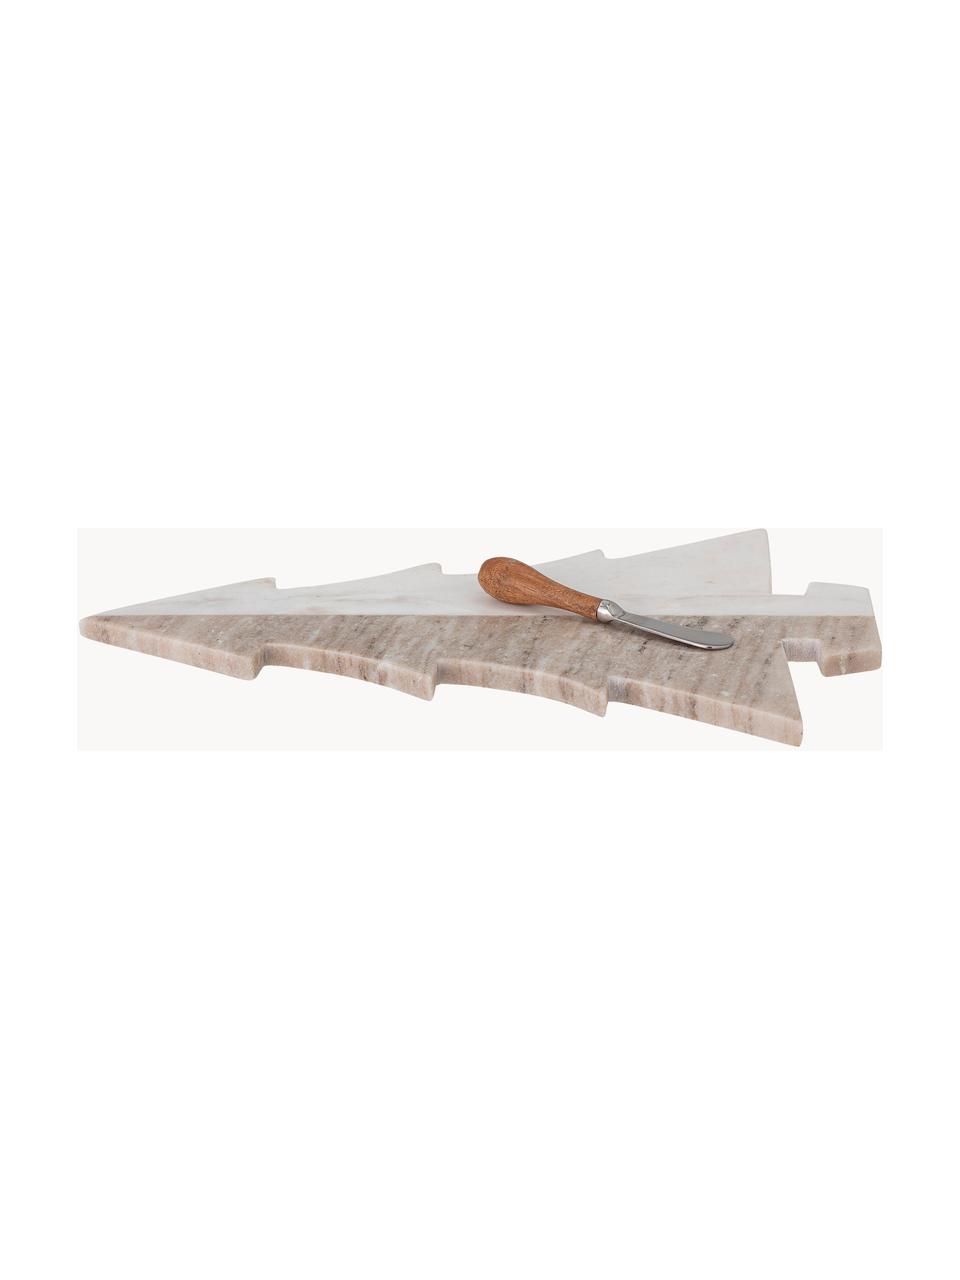 Marmor-Servierplatte Malalai mit Messer, L 42 x B 28 cm, Marmor, Weiss, Beige, marmoriert, Set mit verschiedenen Grössen